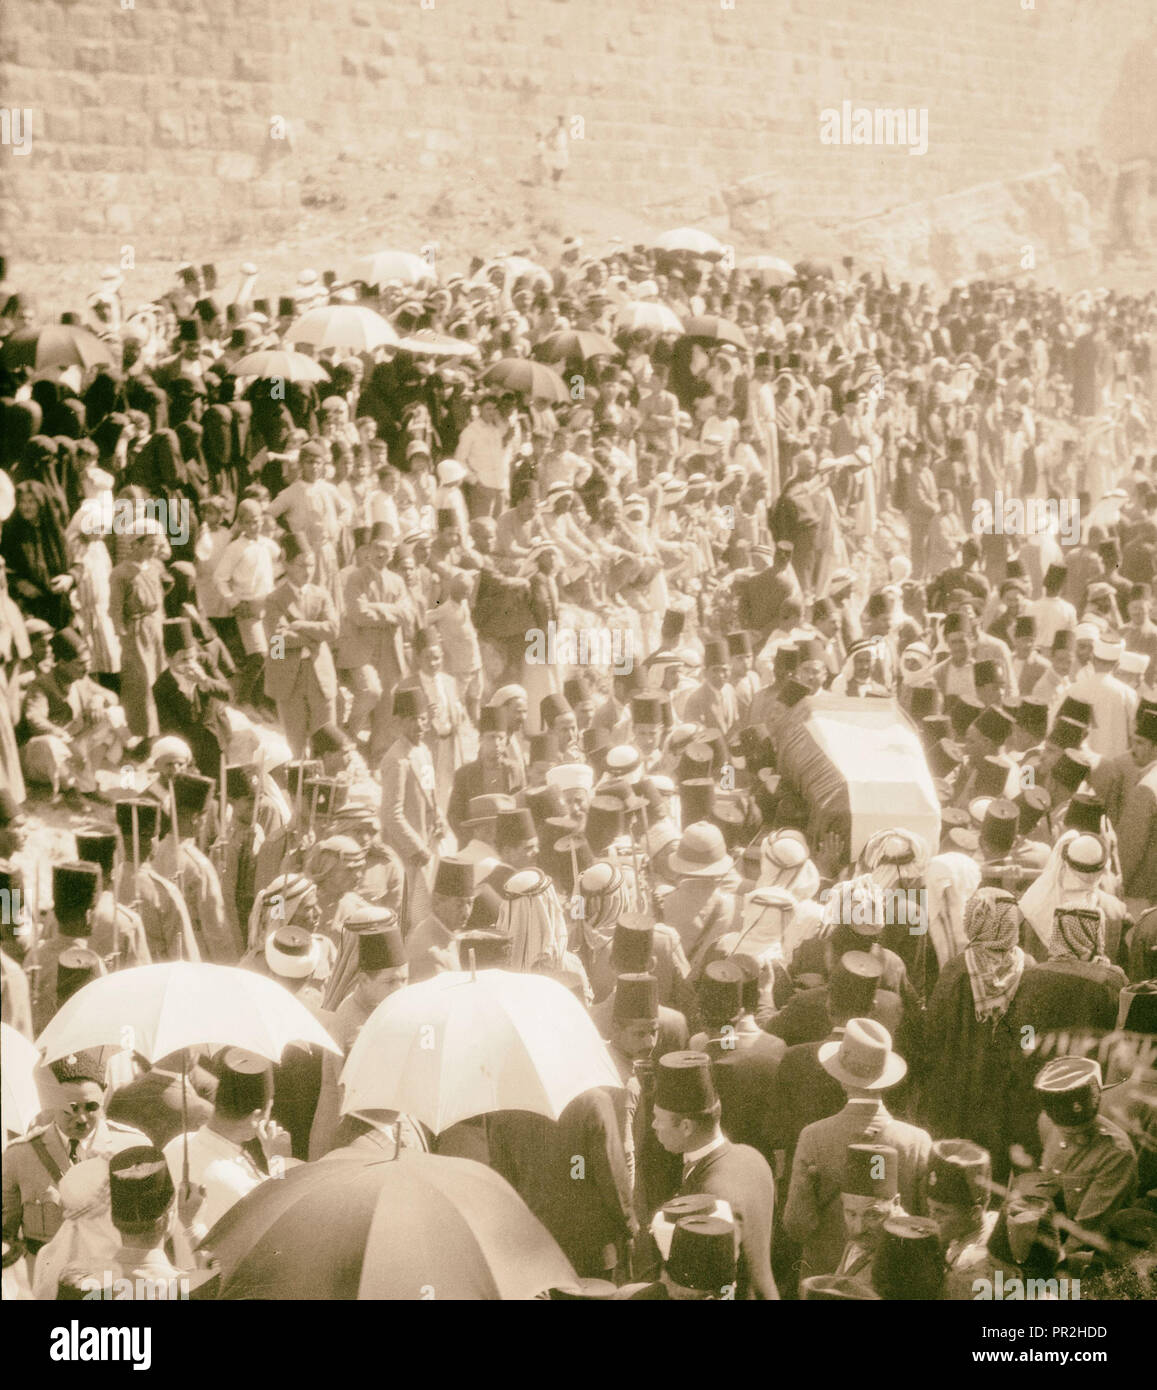 Beerdigung von König Hussein, Jerusalem. 1931, Israel Stockfoto